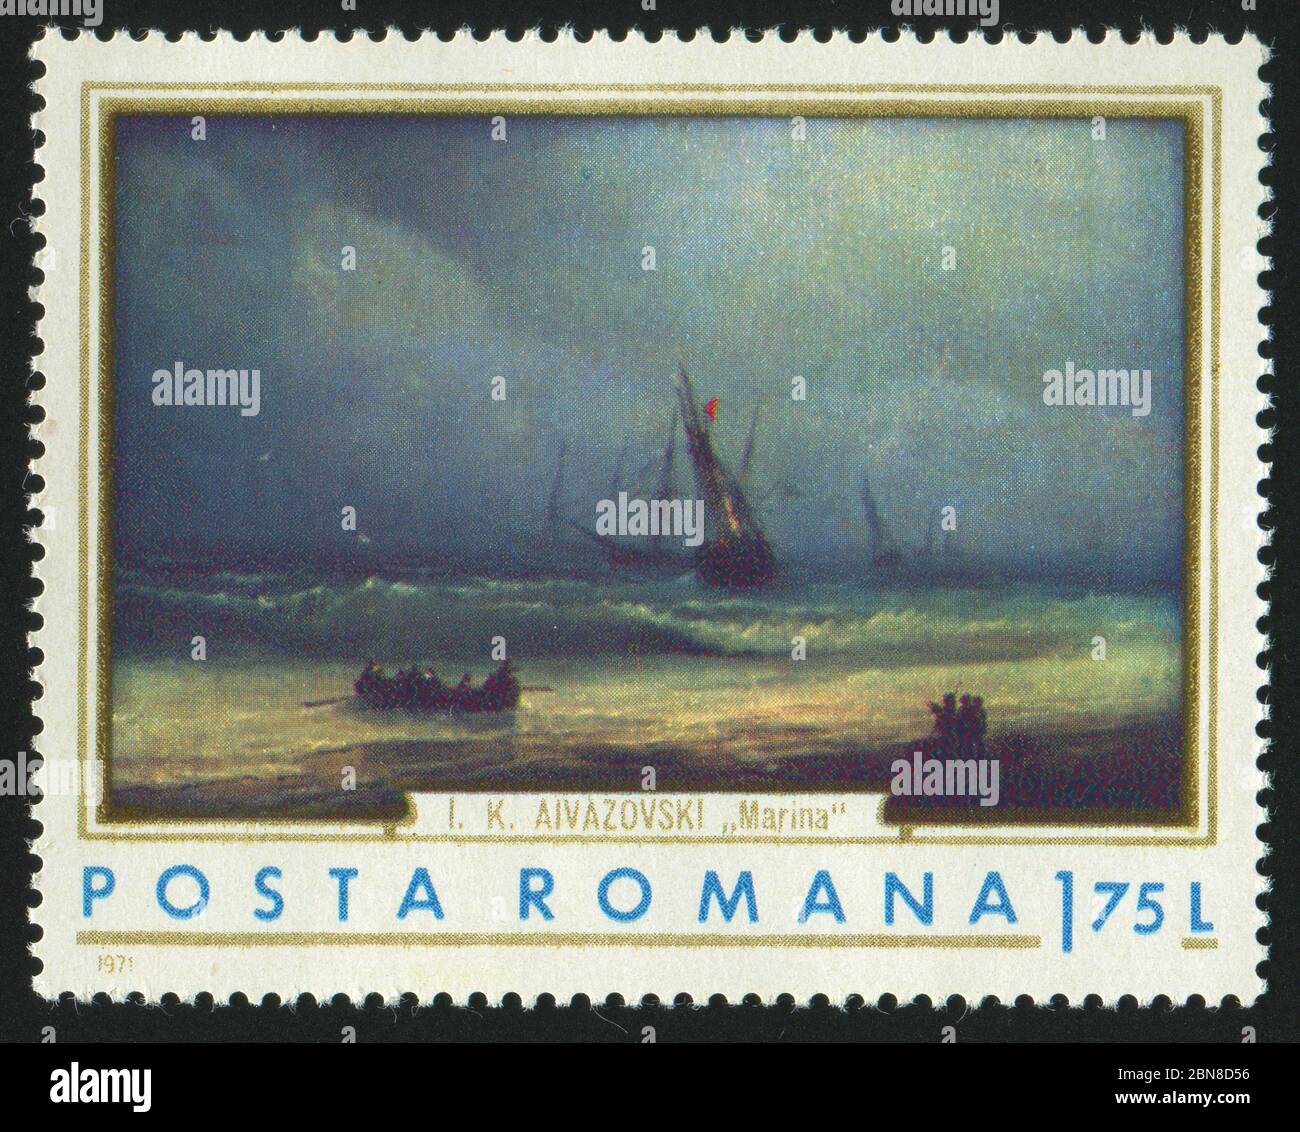 ROUMANIE - VERS 1971 : timbre imprimé par la Roumanie, exposition Ivan Konstantinovich Aivazovski peintures de navires, vers 1971. Banque D'Images